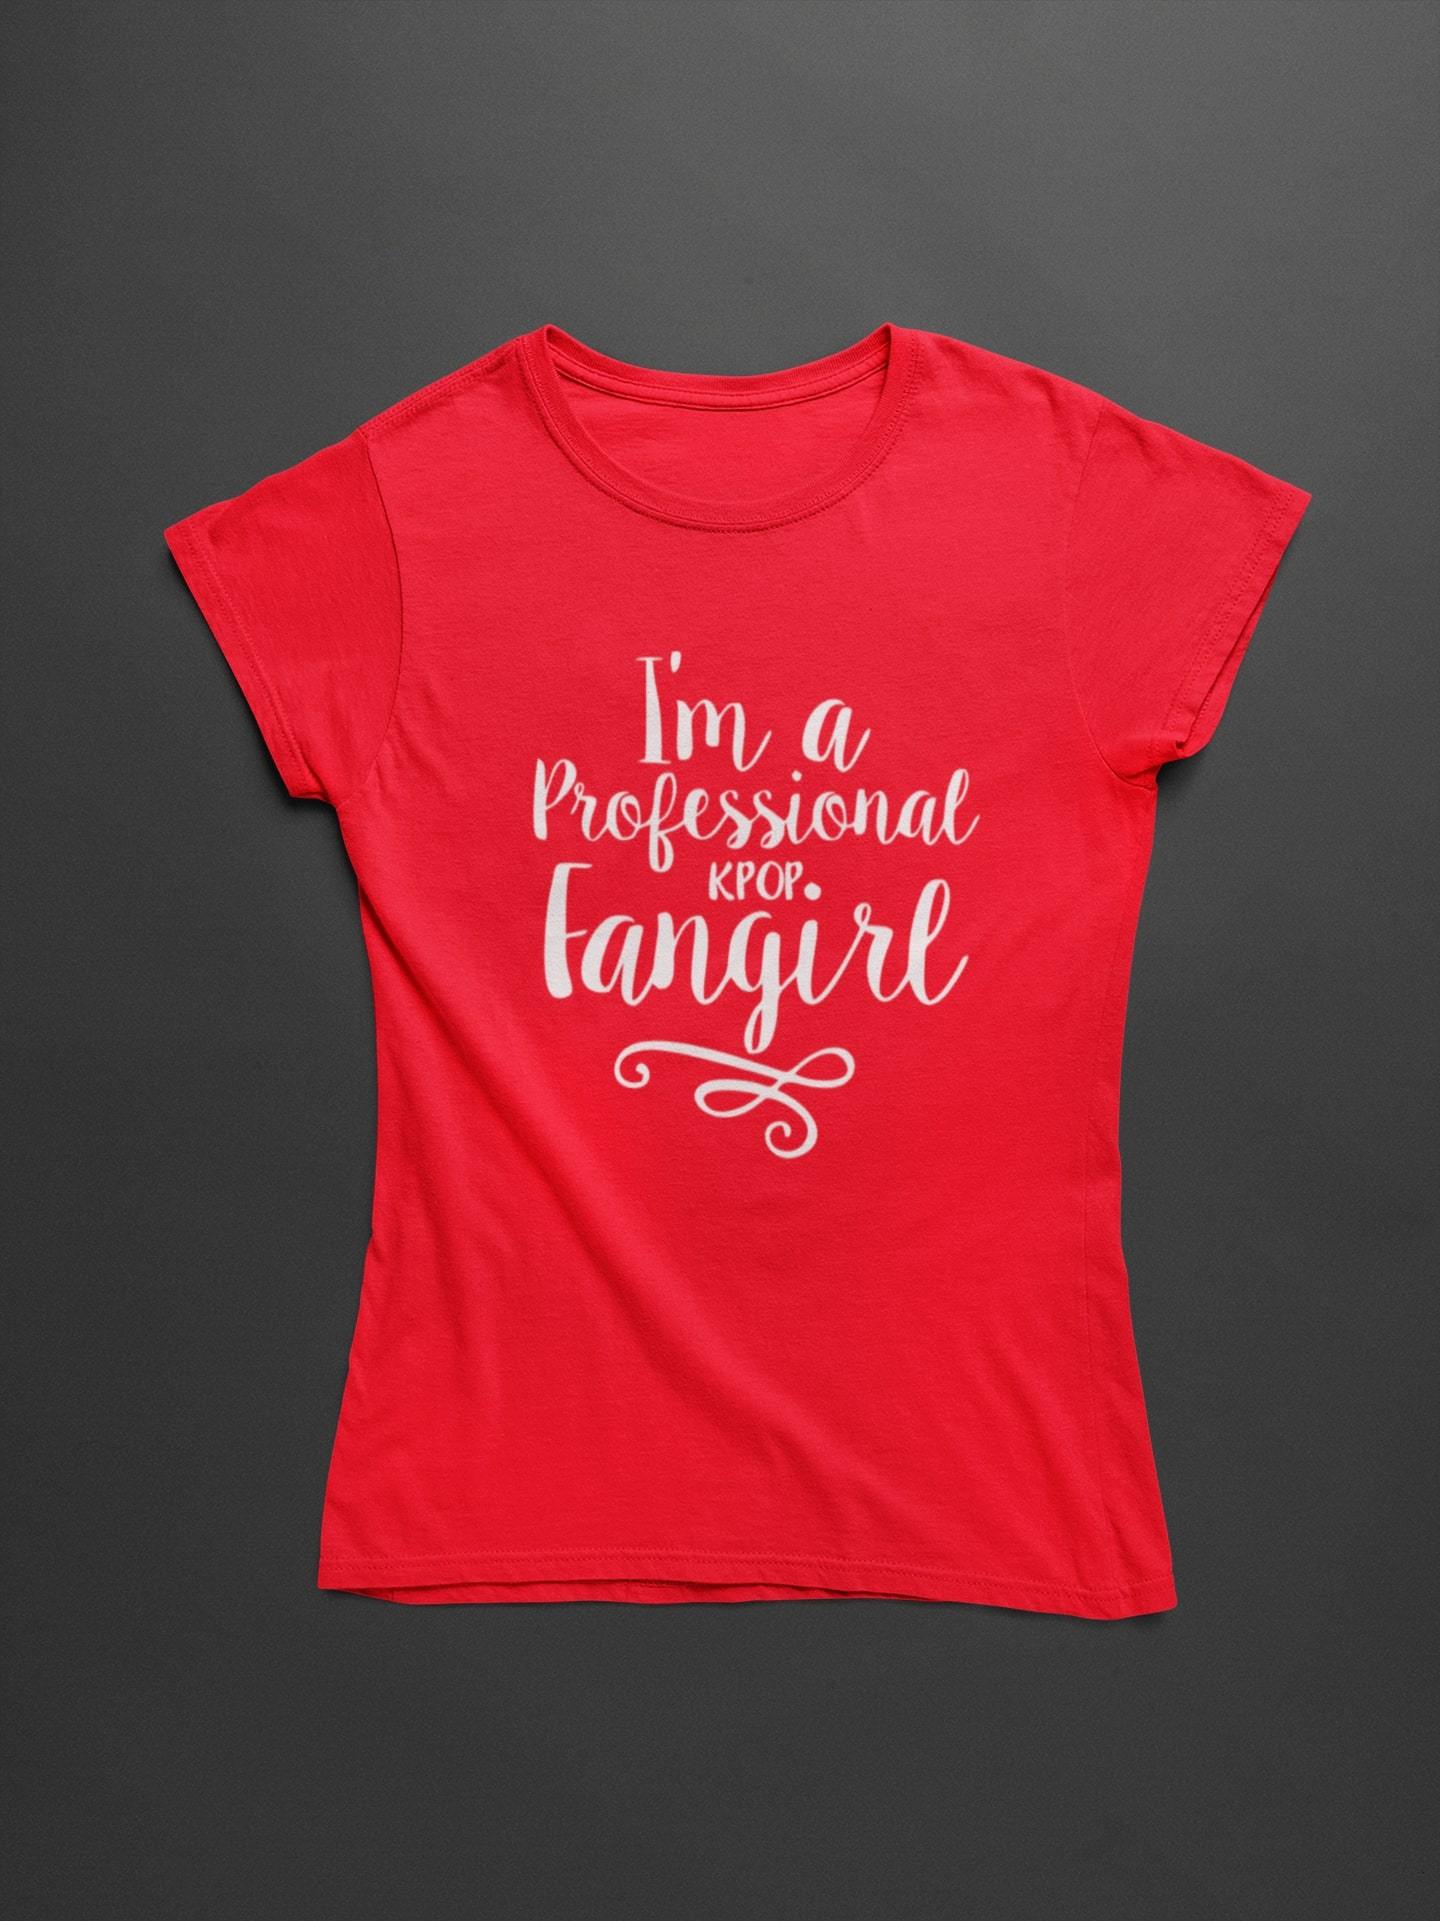 thelegalgang,KPOP Fangirl T-Shirt for Women,WOMEN.